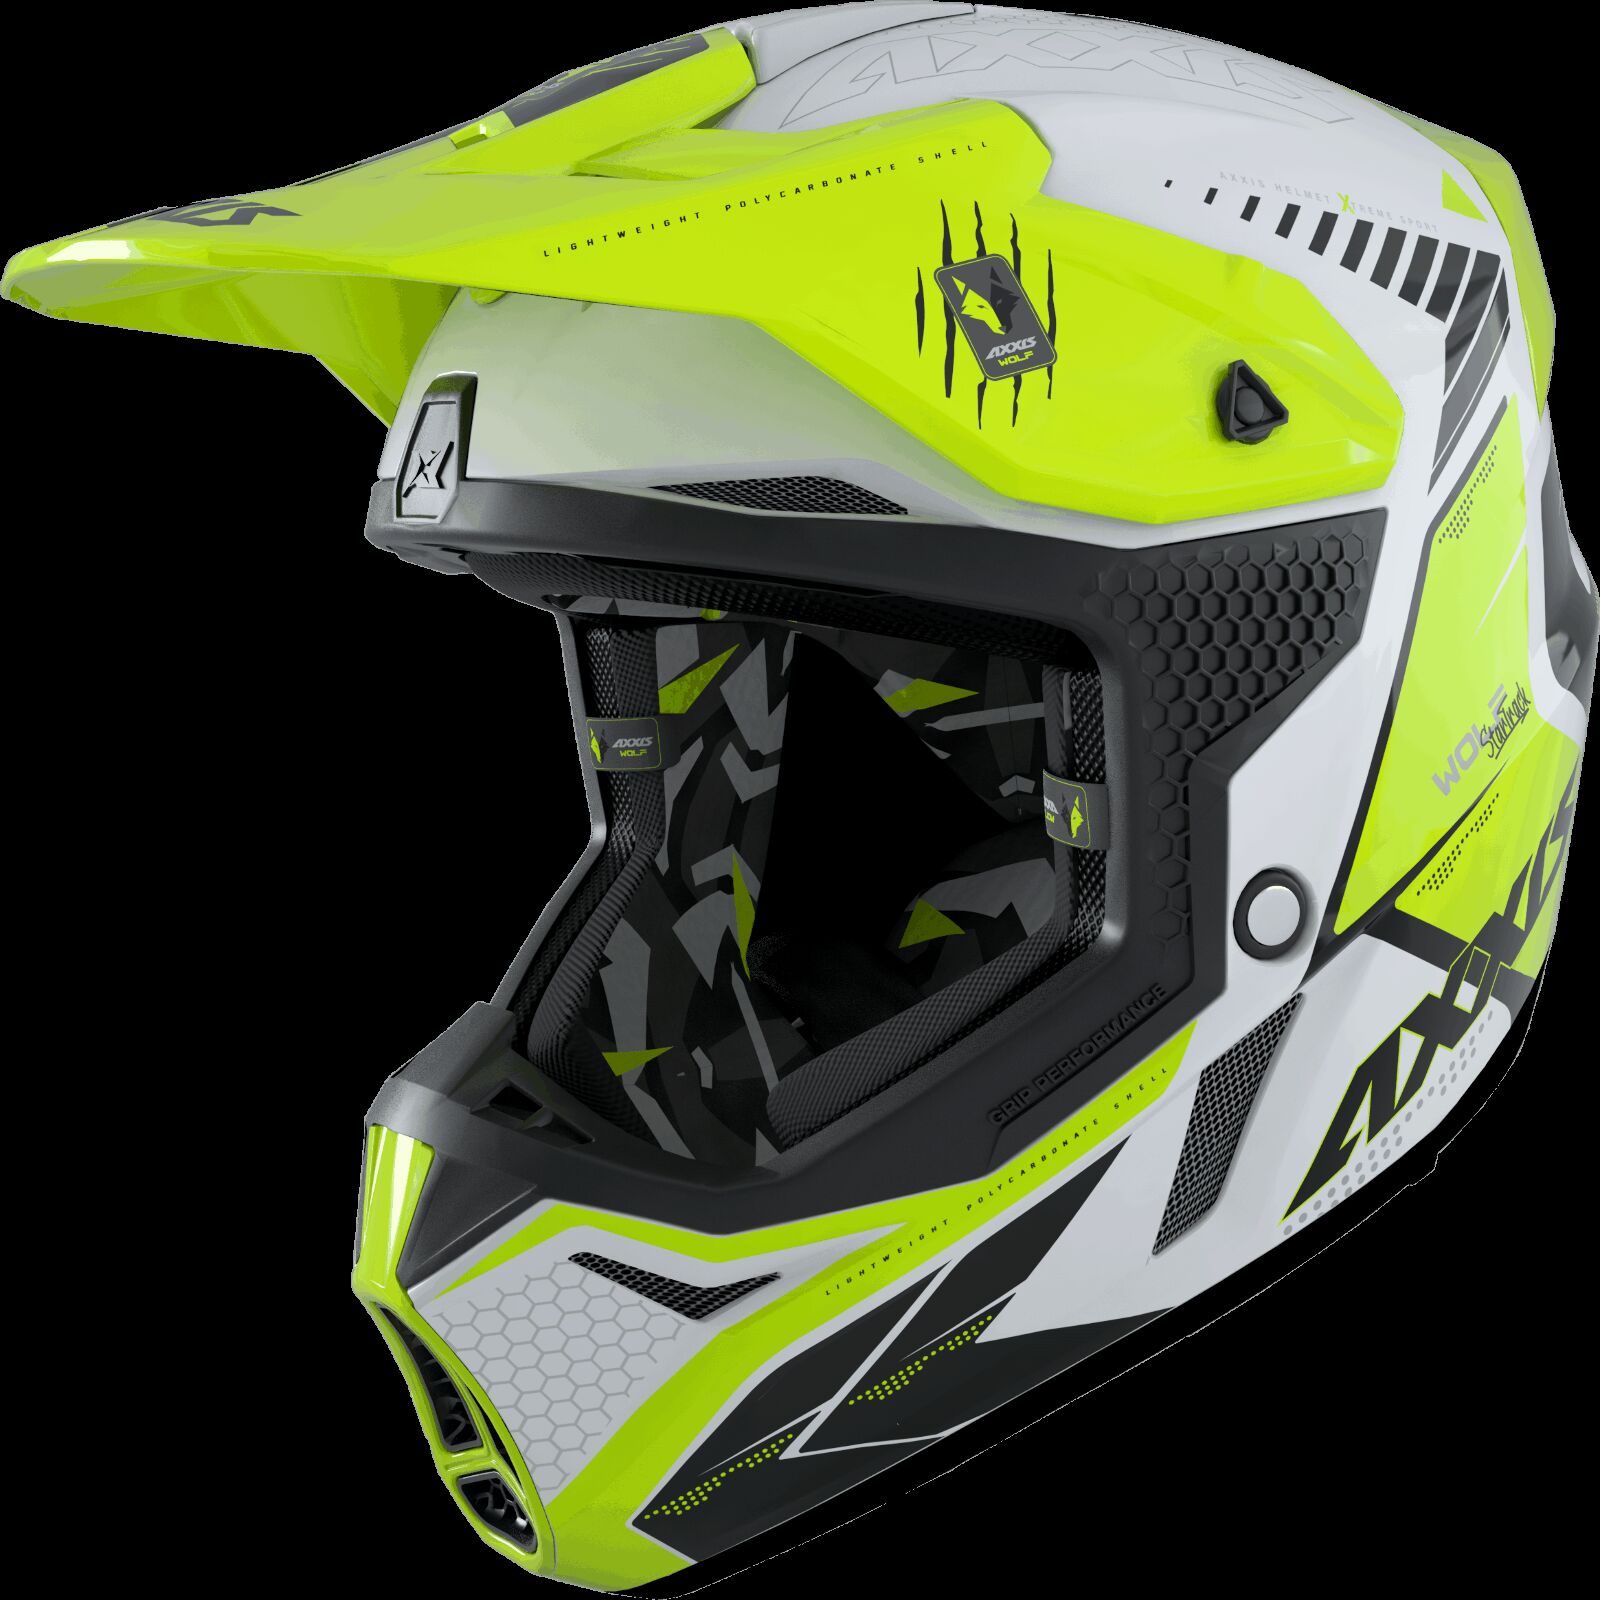 Obrázek produktu Motokrosová helma AXXIS WOLF ABS star track a3 lesklá fluor žlutá XXL 42587410308